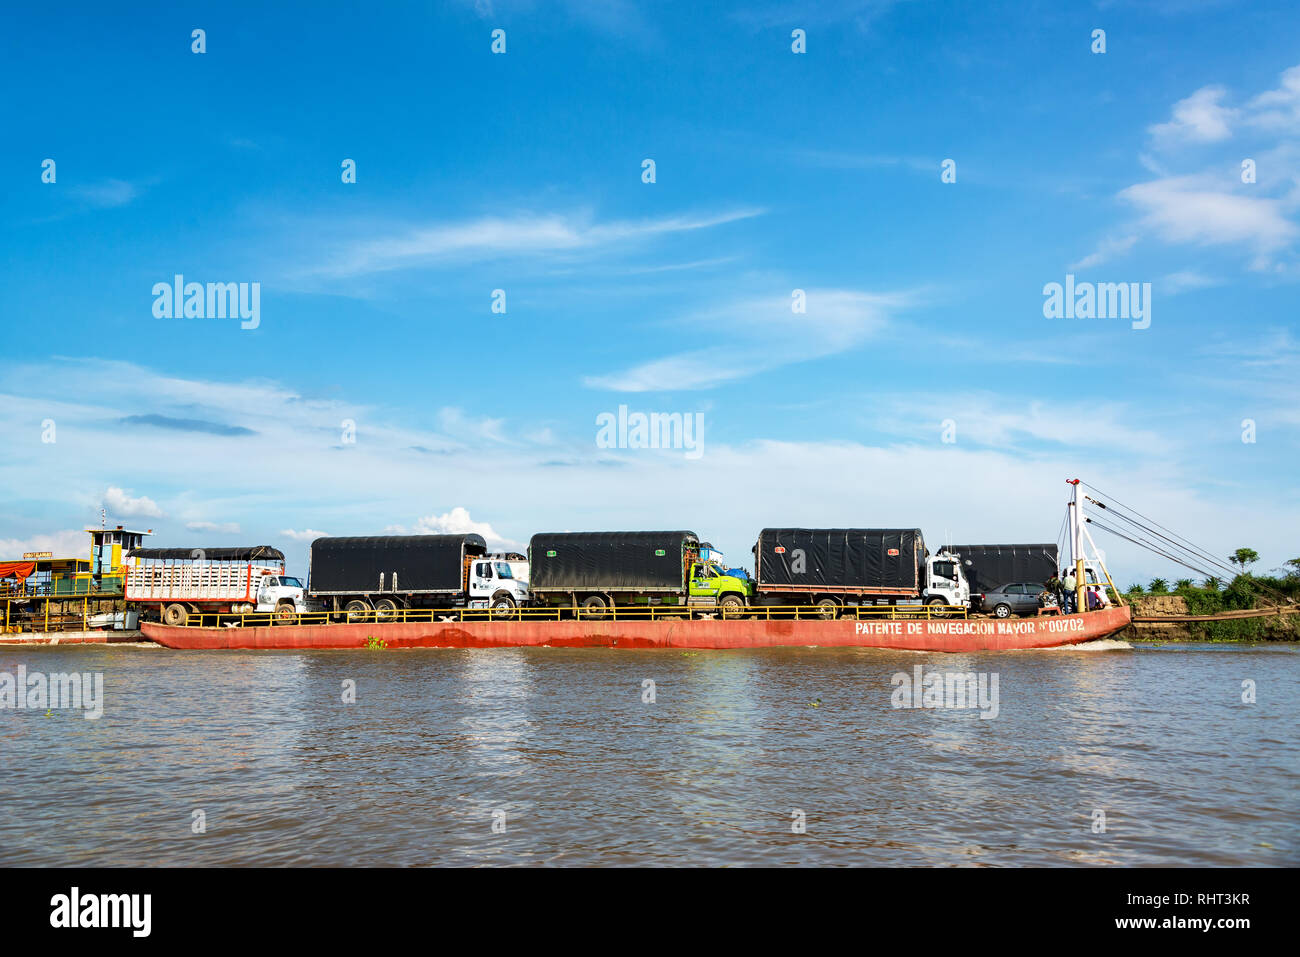 MAGANGUE, Colombia - 26 Maggio: Barge con camion e automobili sul fiume Magdalena vicino a Magangue, Colombia il 26 maggio 2016 Foto Stock